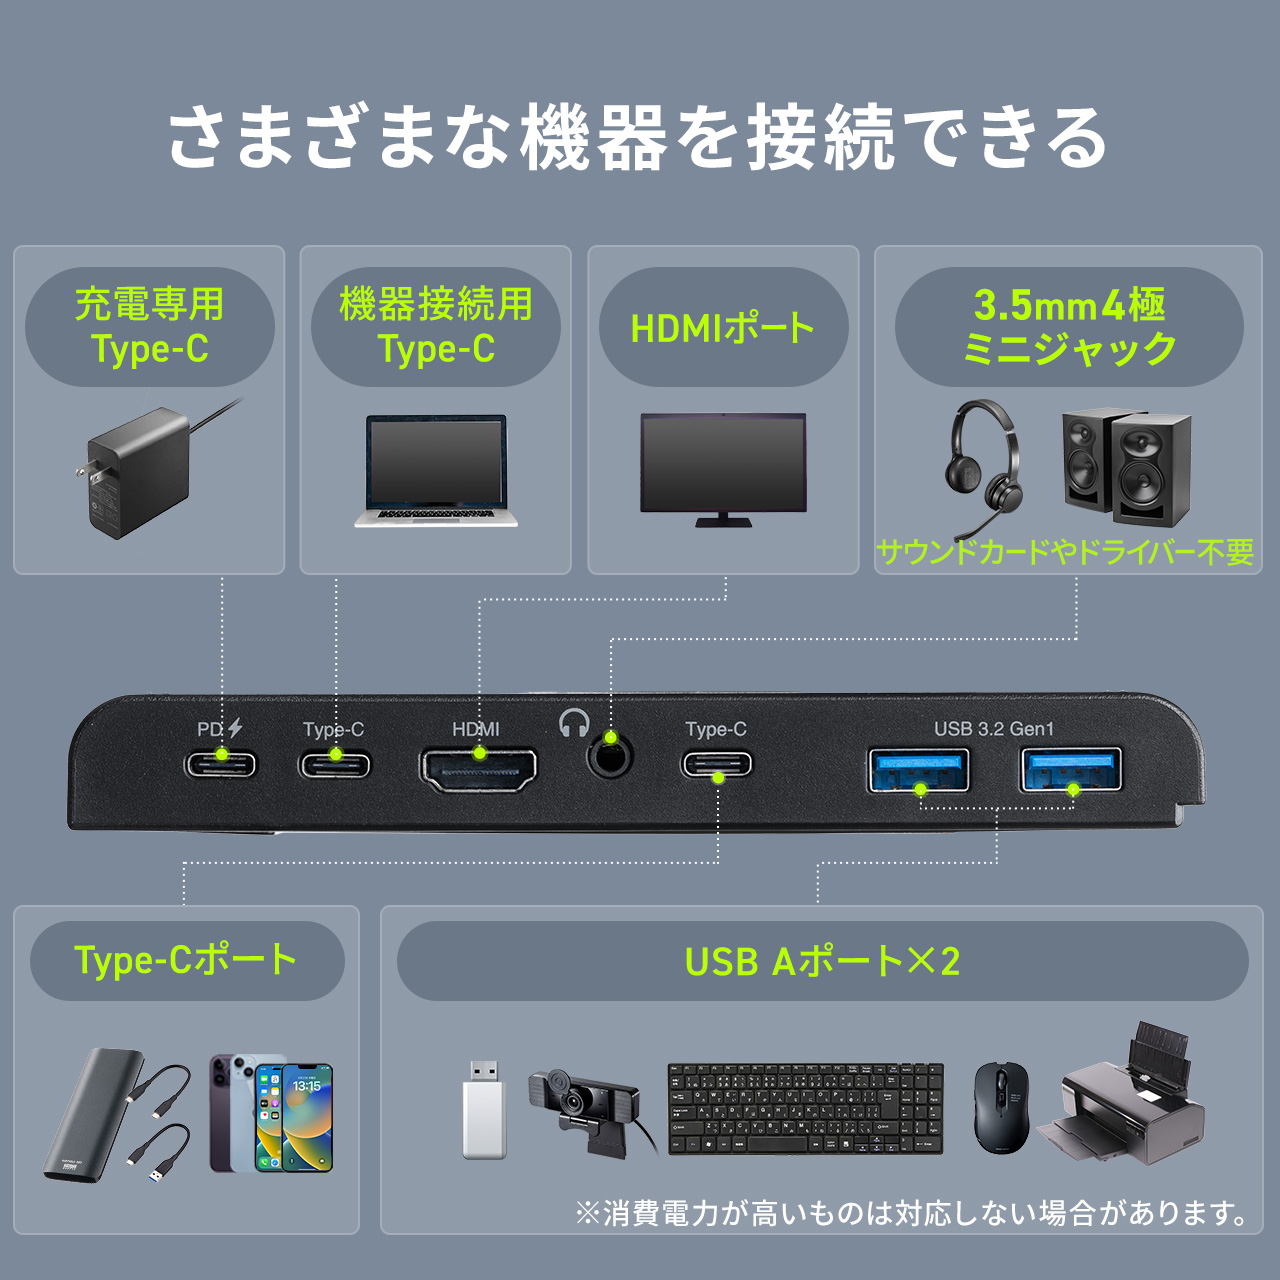 ドッキングステーション HDMI 4K Type-C コンパクト スタンド スマホ スマートフォン タブレット Switch対応 USB 増設 ハブ 変換 充電 400-HUBC14BK